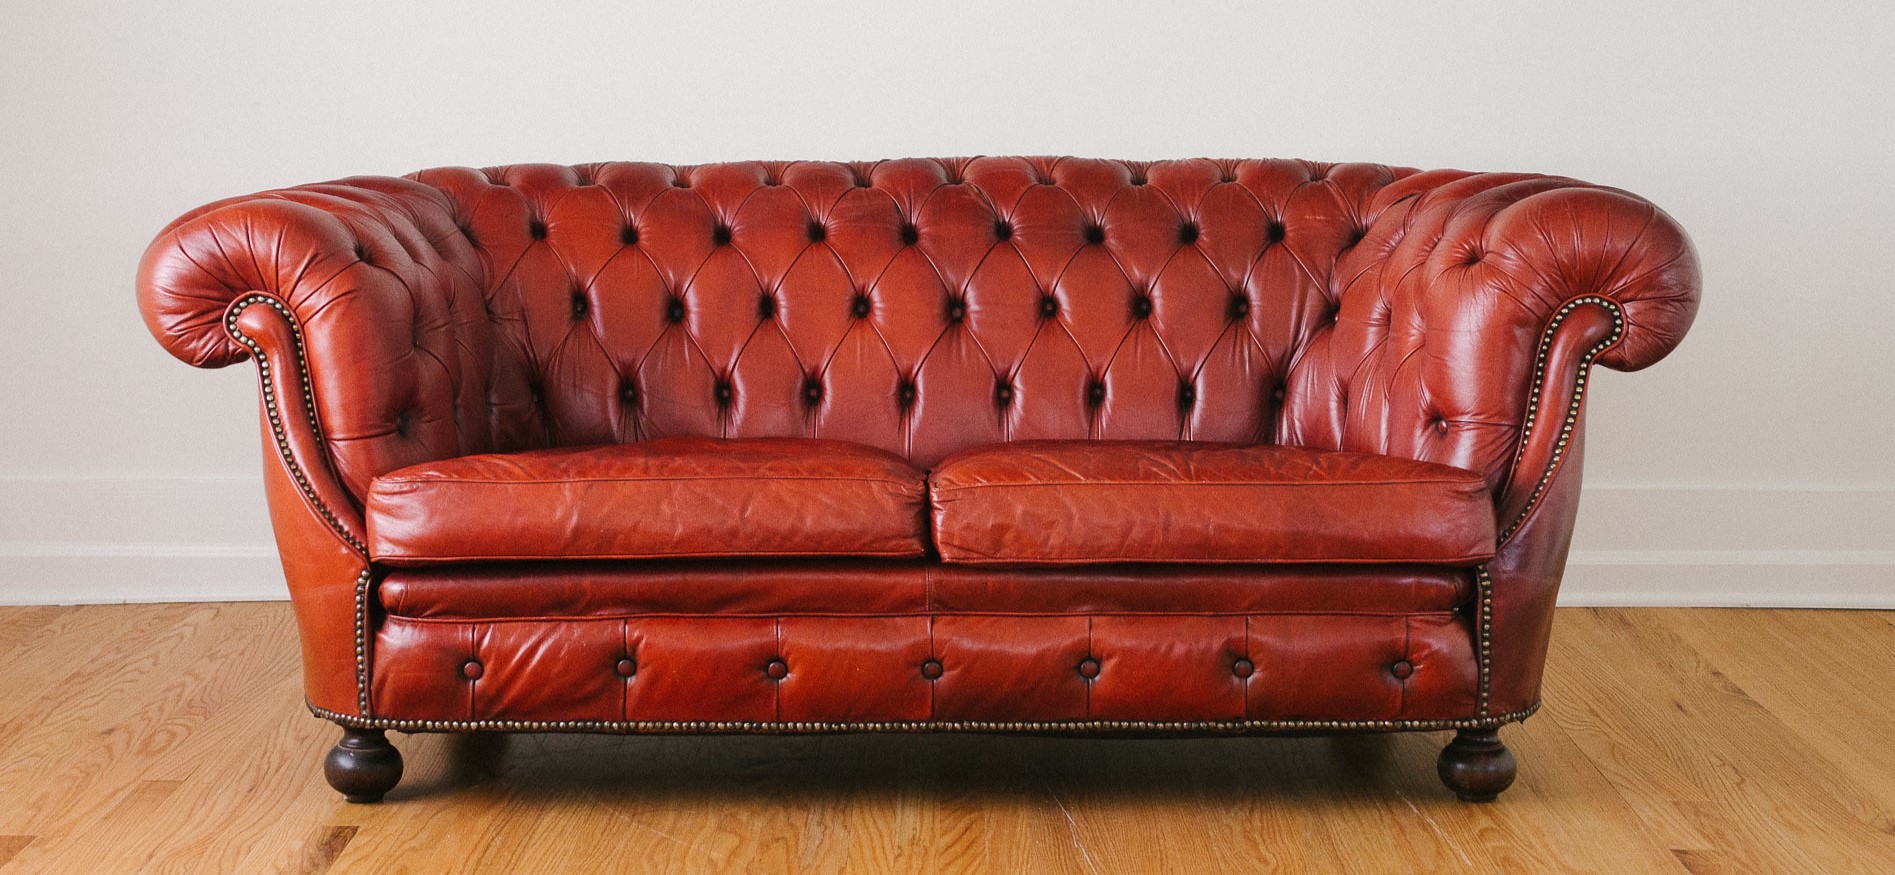 Кожаный диван подойдет для классического интерьера домашней библиотеки